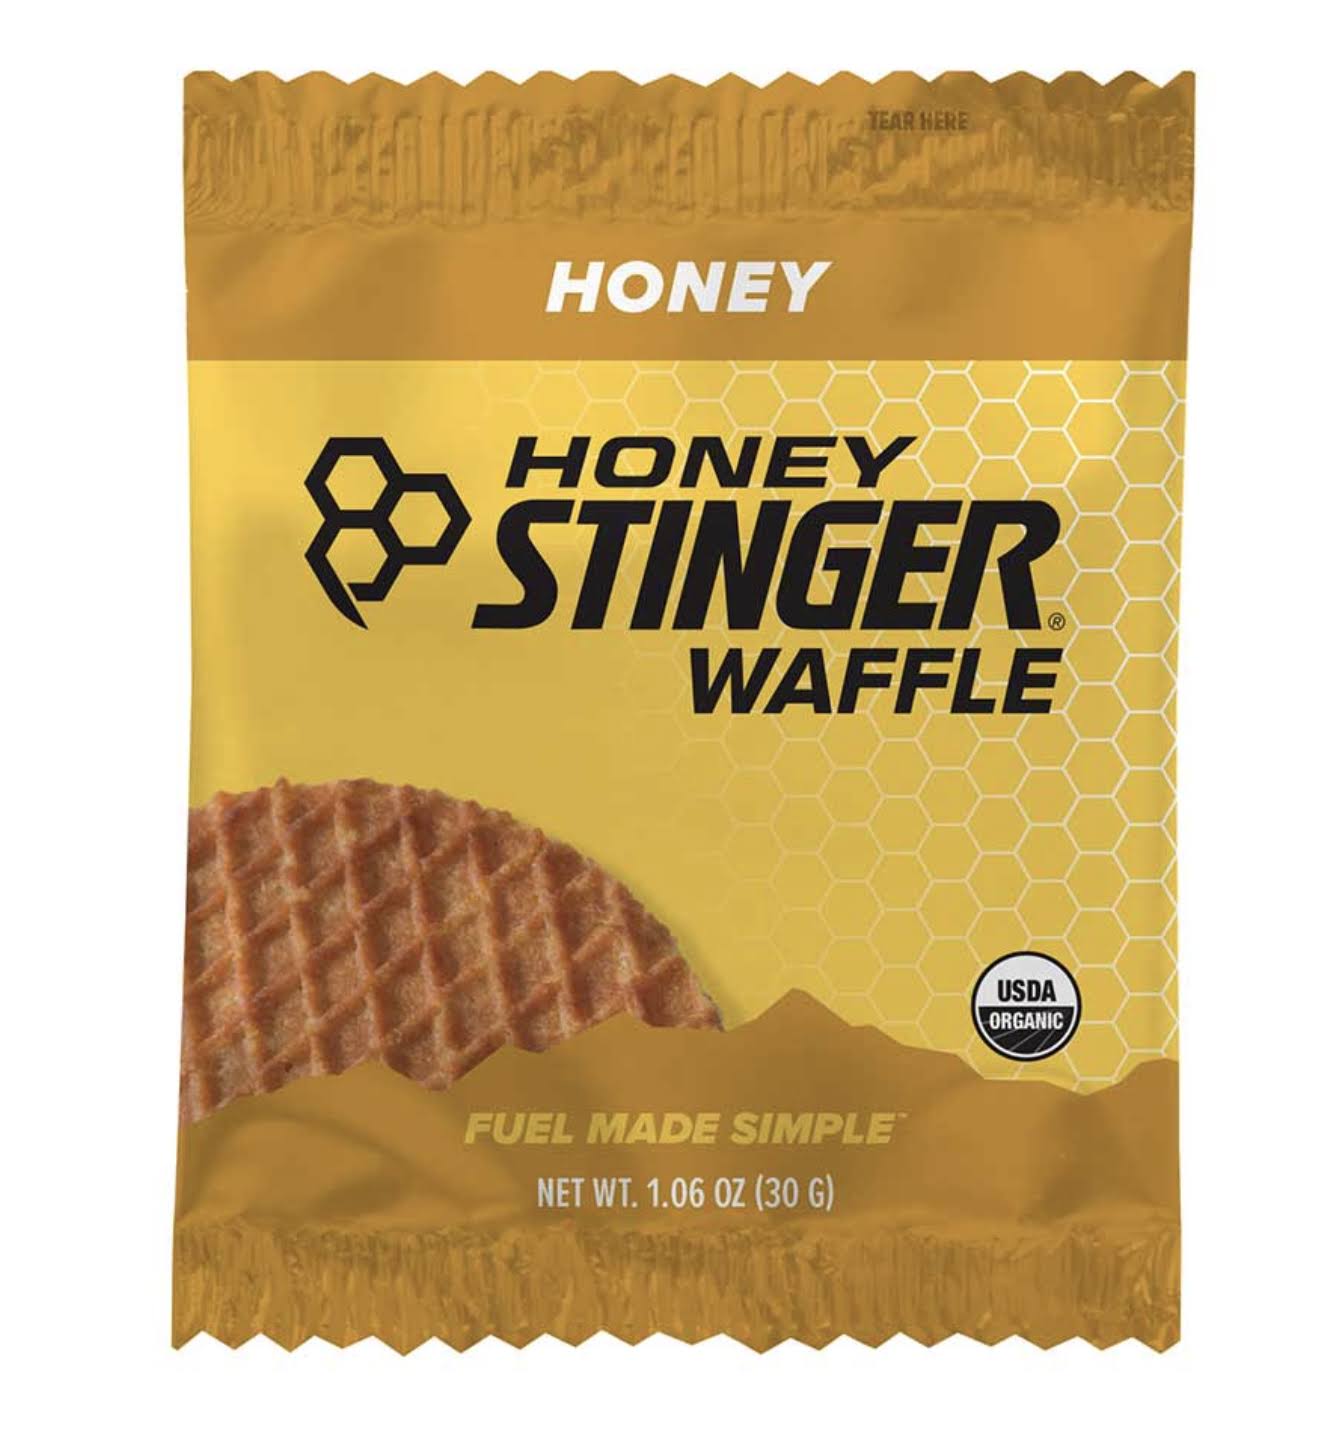 Honey Stinger Waffle - Honey, 1.06oz